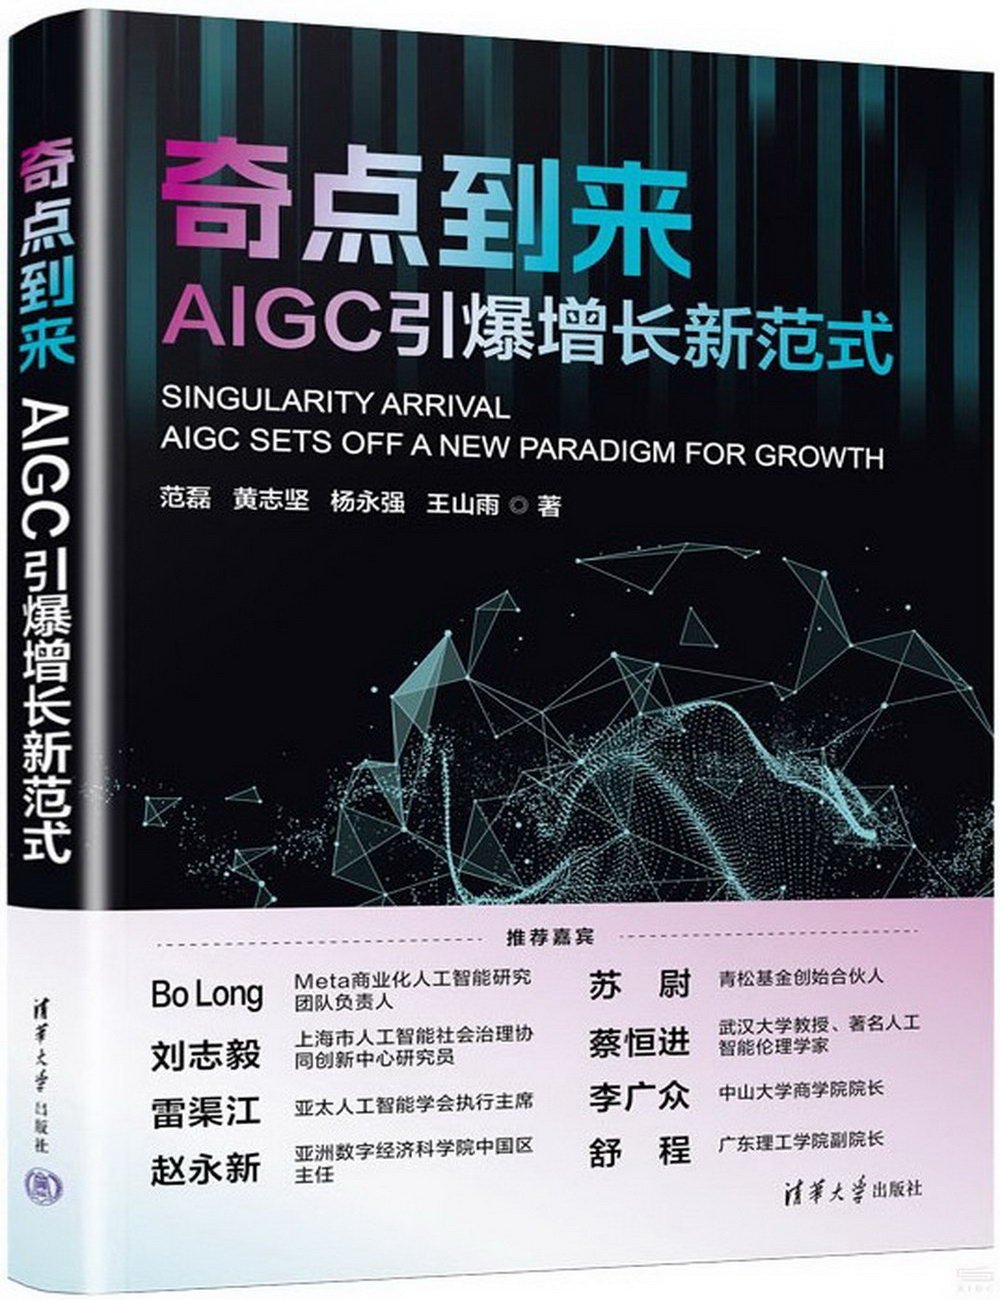 奇點到來：AIGC引爆增長新範式